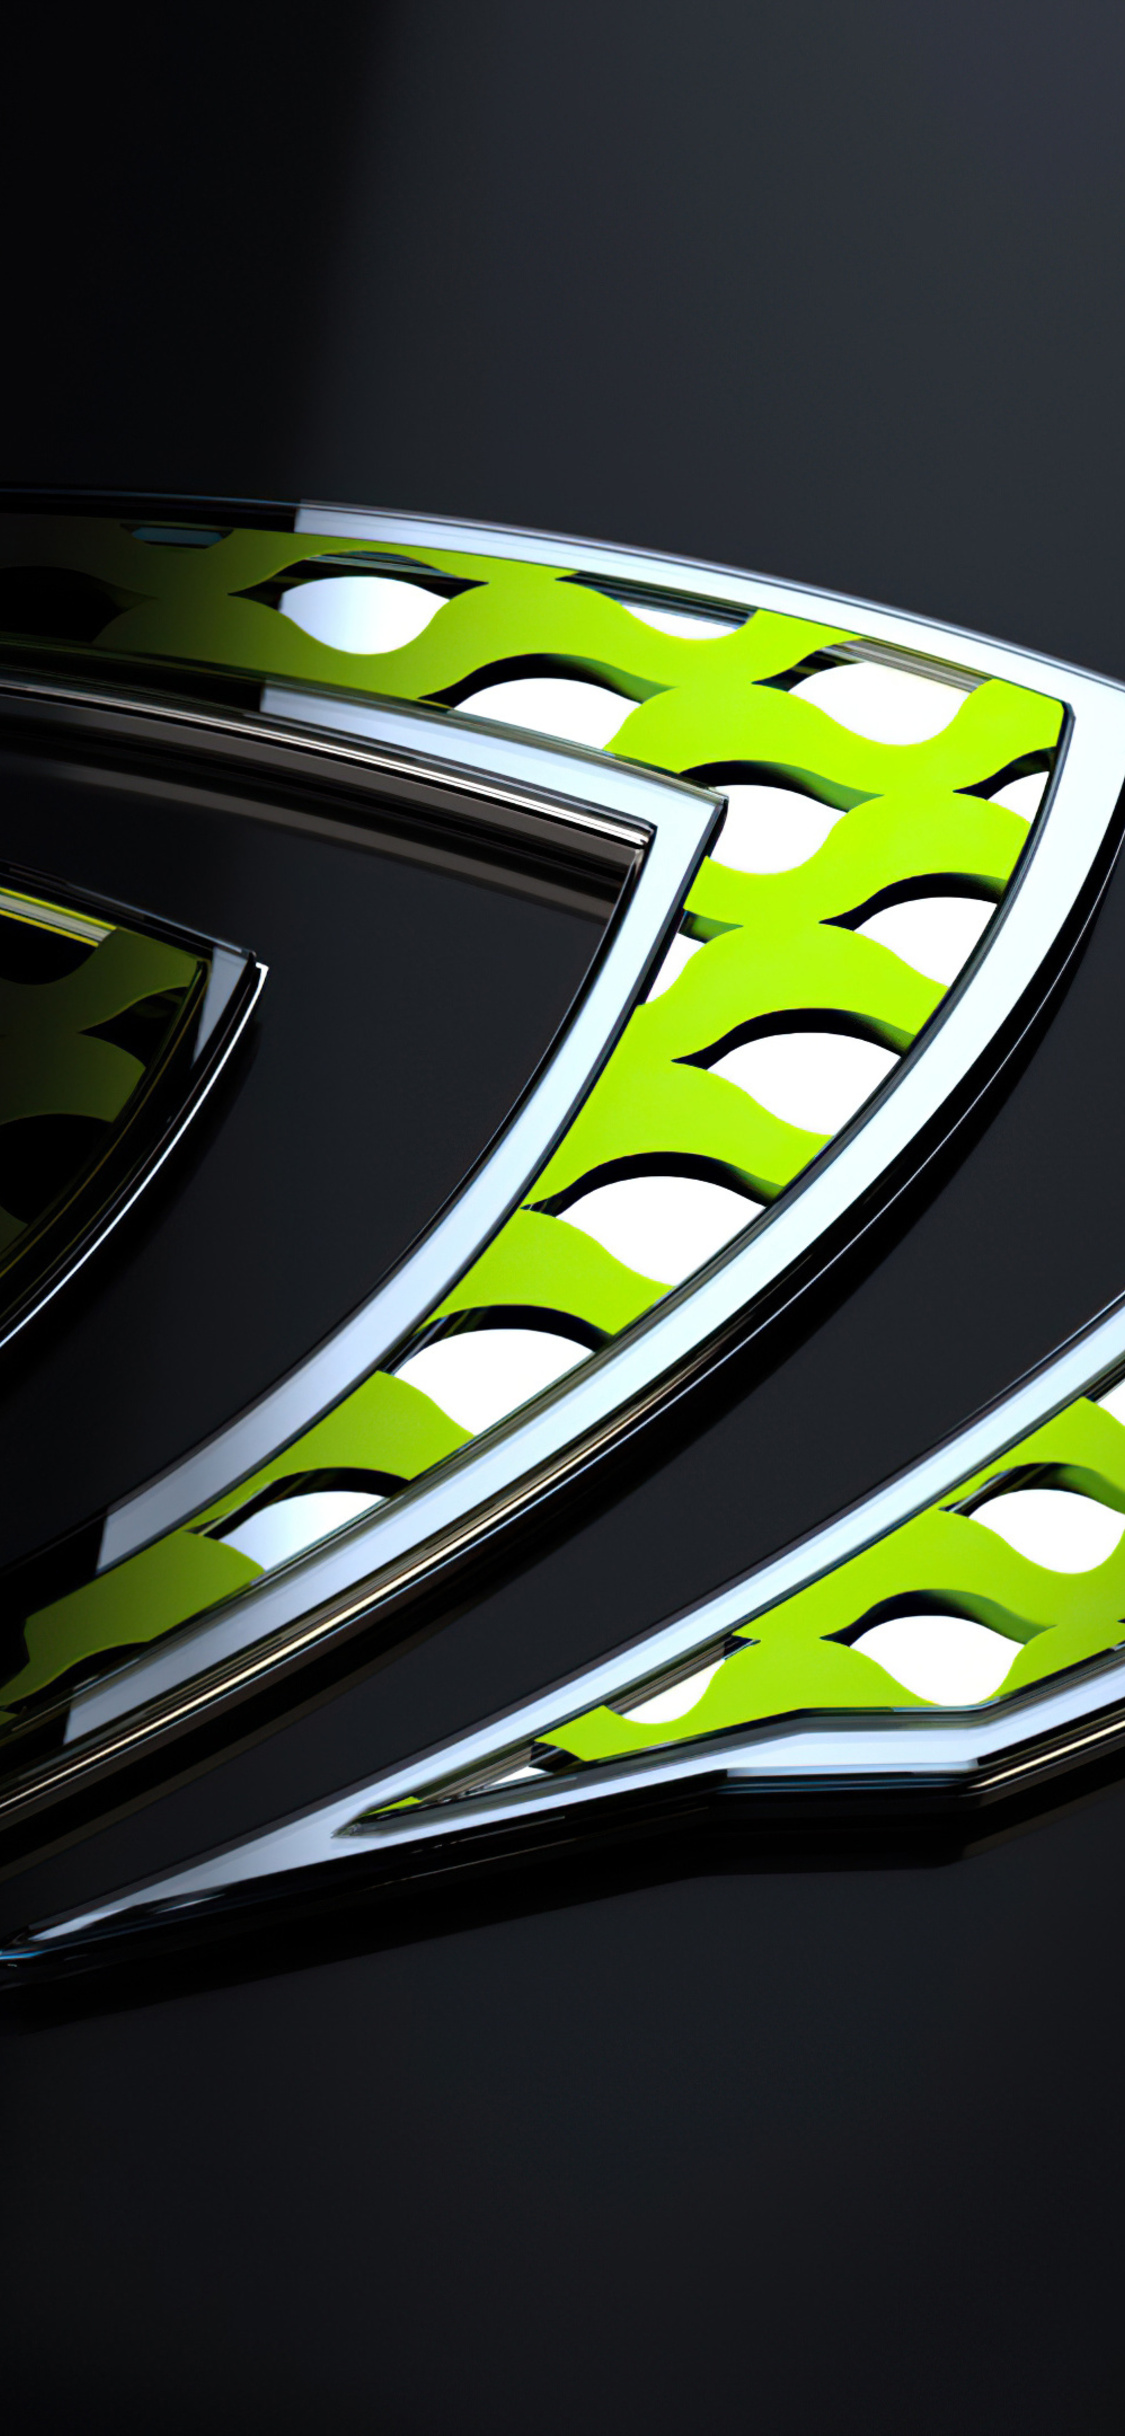 nvidia-cinema-4d-logo-pw.jpg